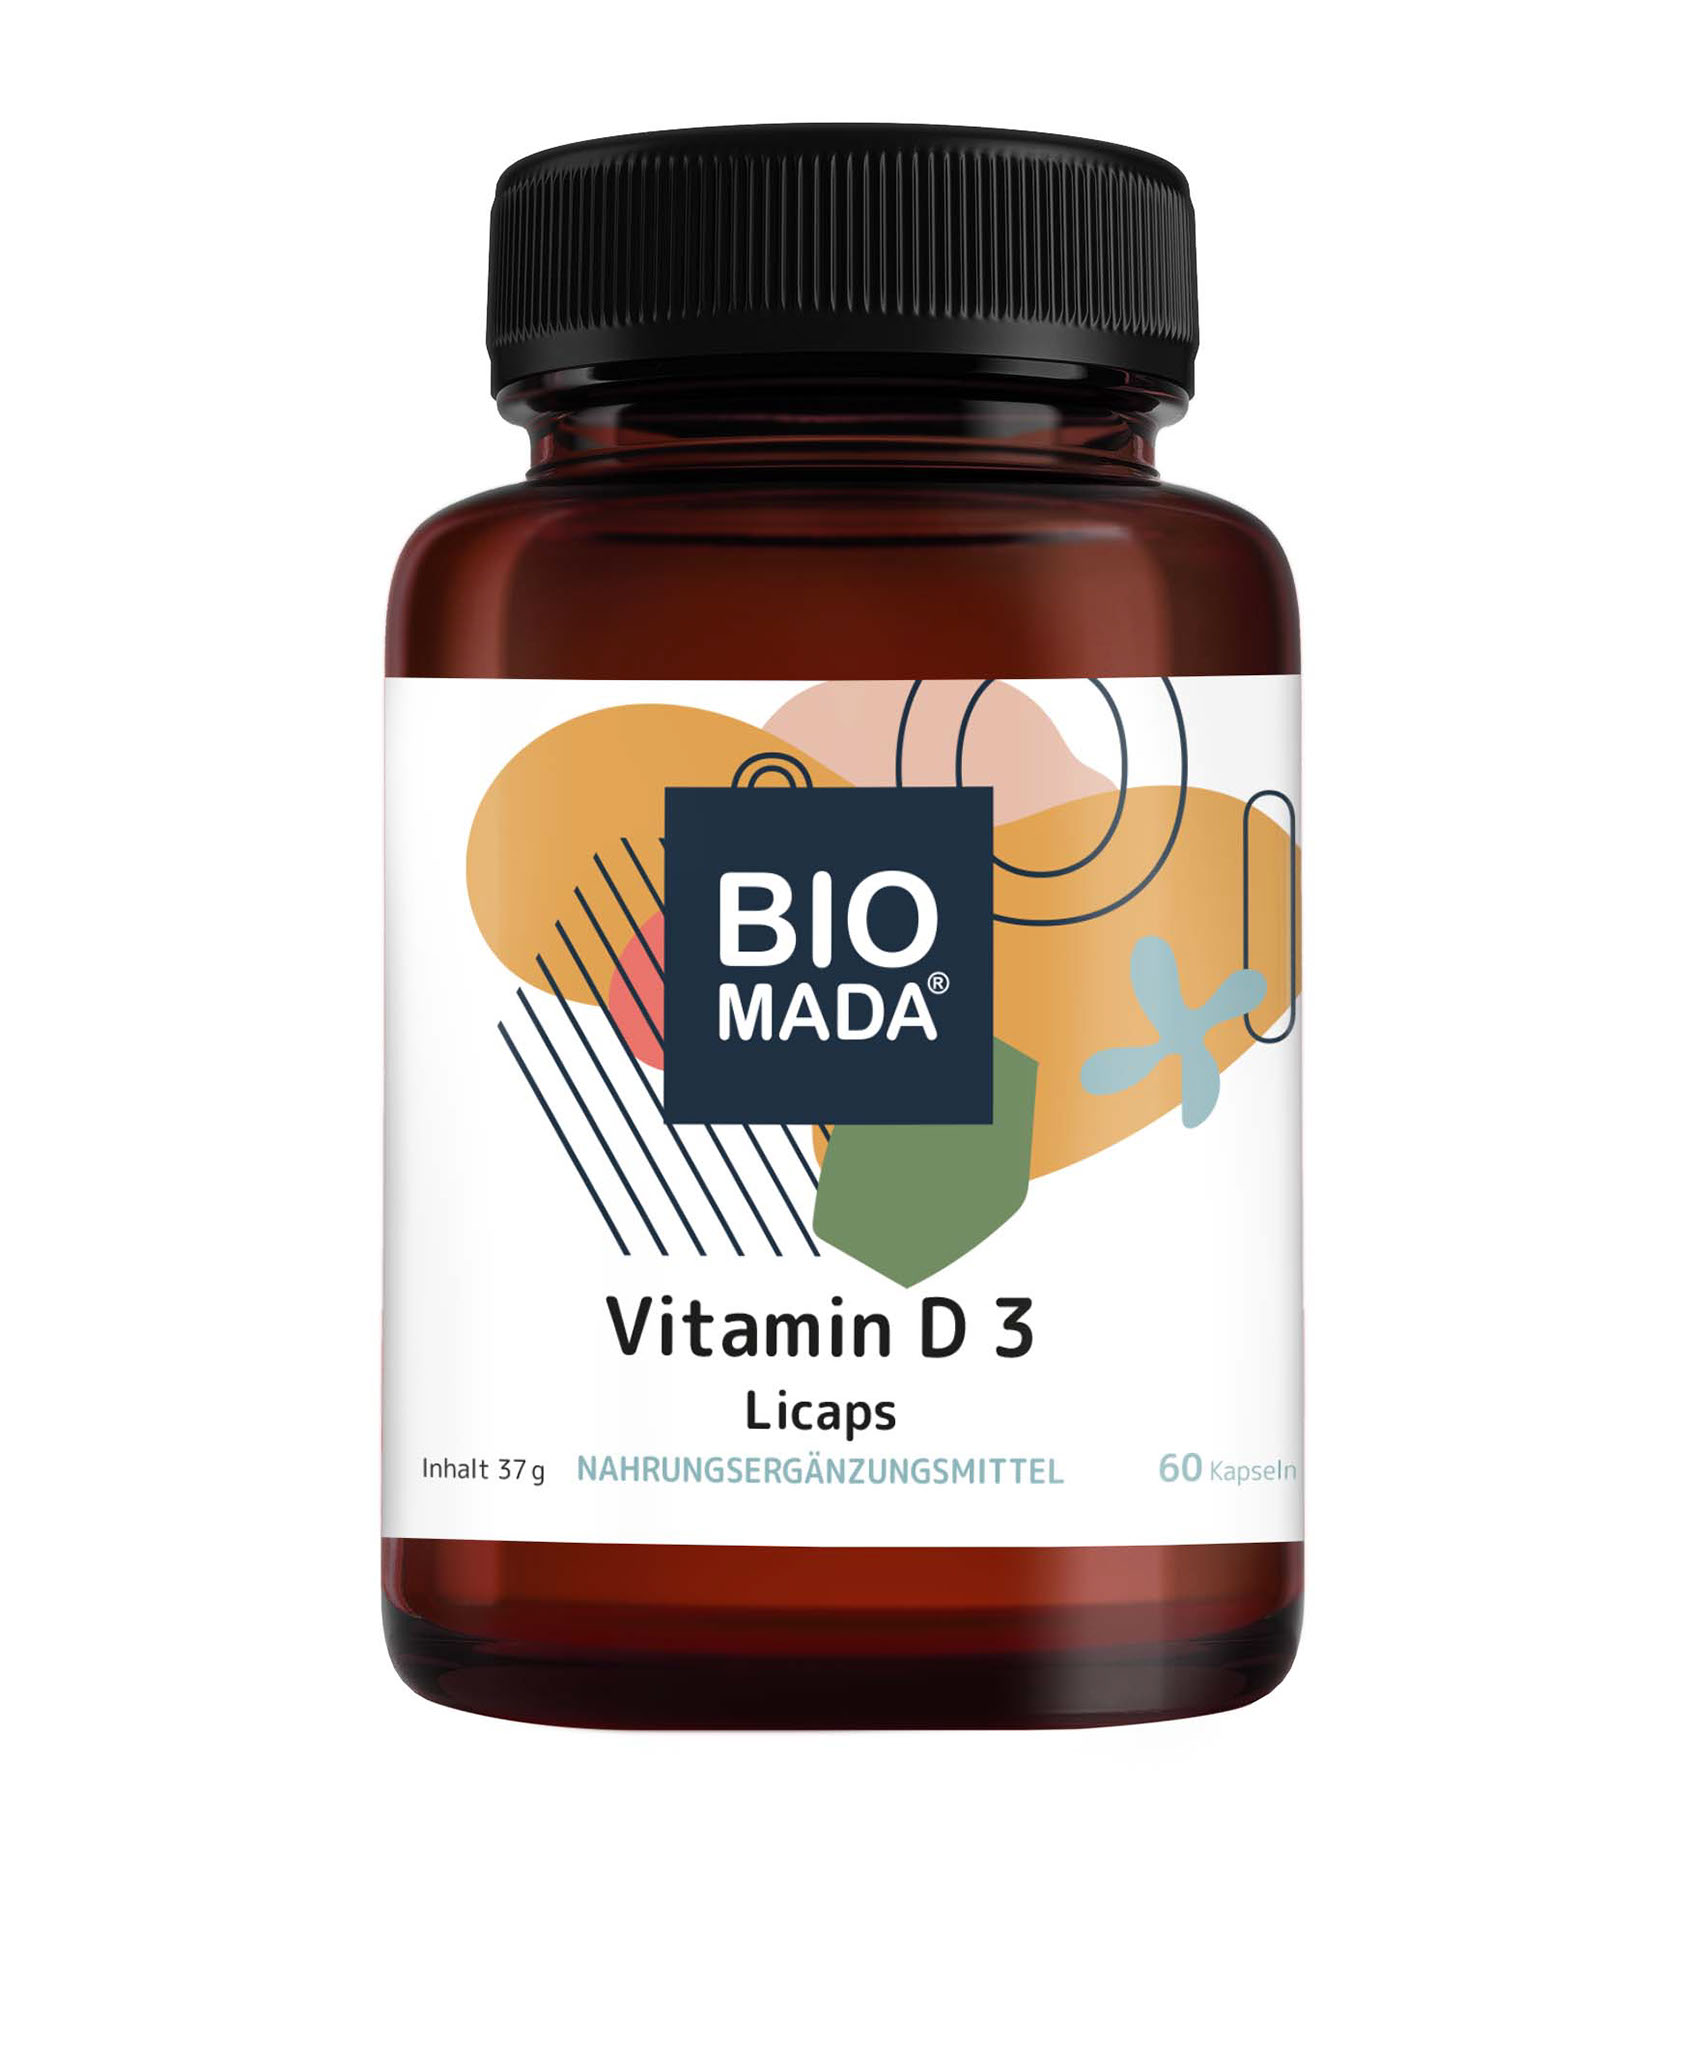 Vitamin D3 Licaps